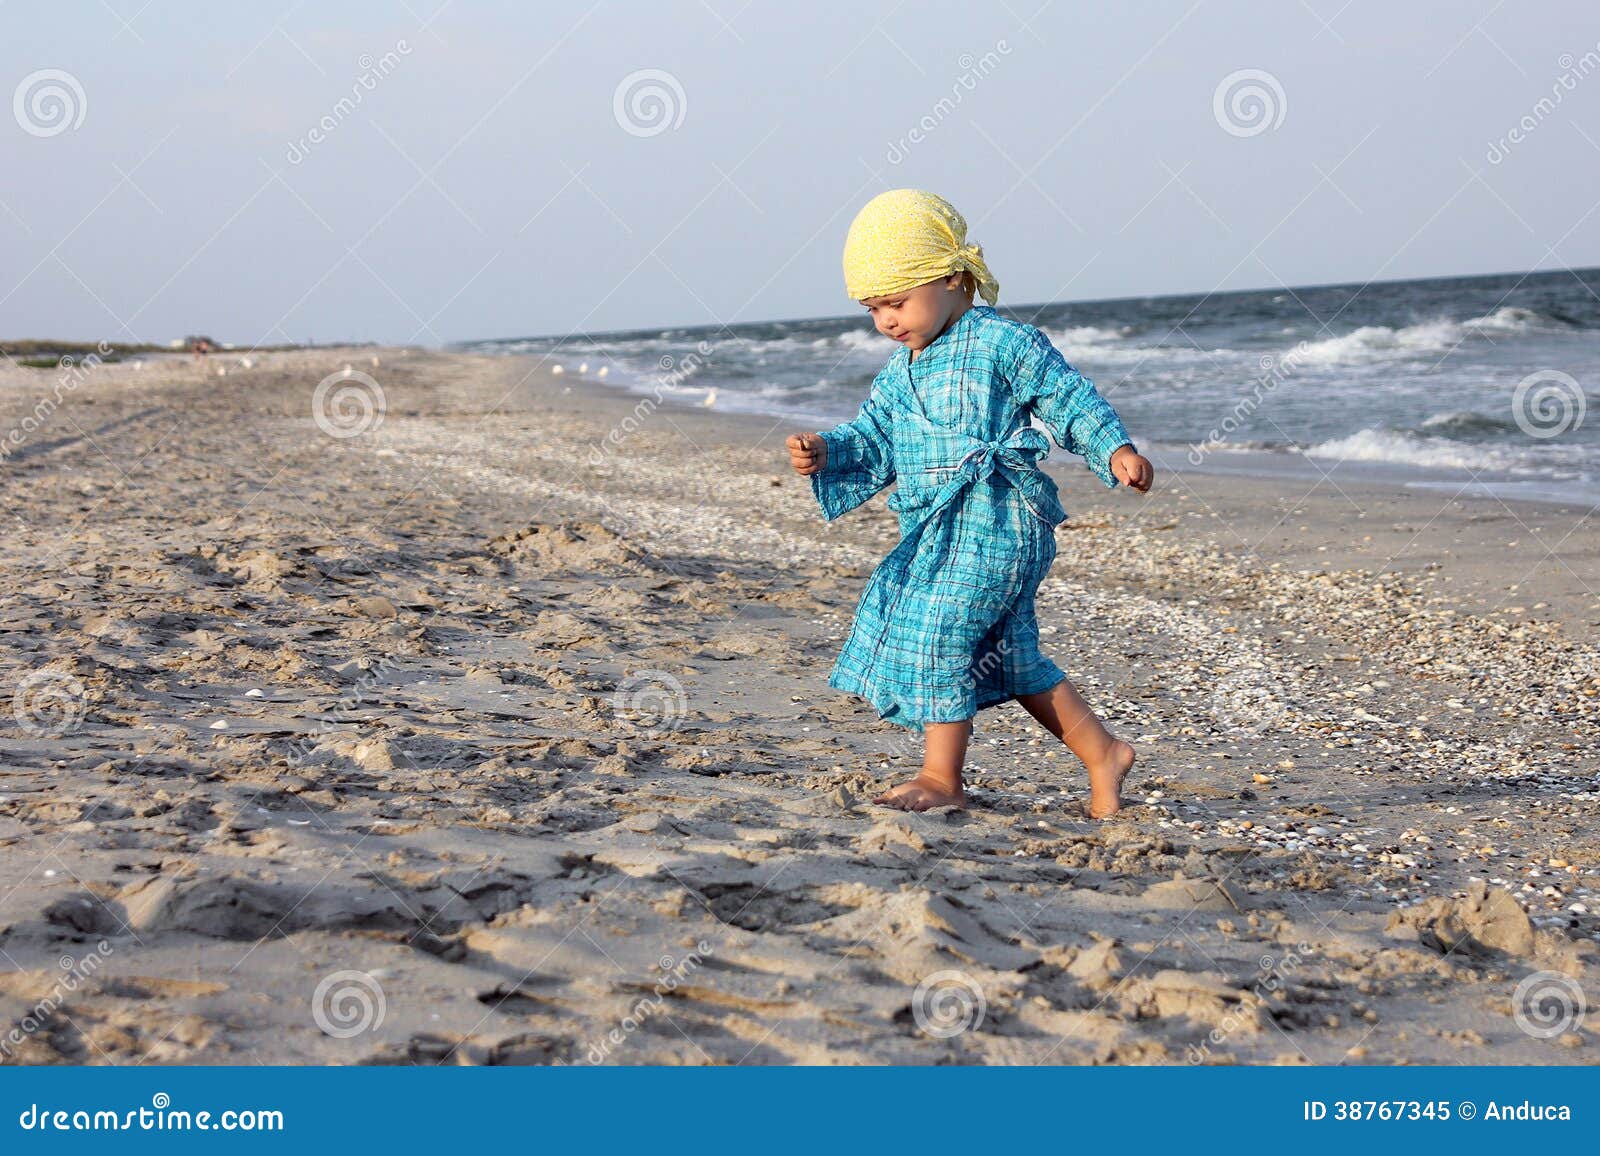 Enfant en bas âge sur la plage. L'enfant en bas âge marchant sur la plage s'est habillé avec une robe bleue et un bandana jaune, recherchant des coquillages.